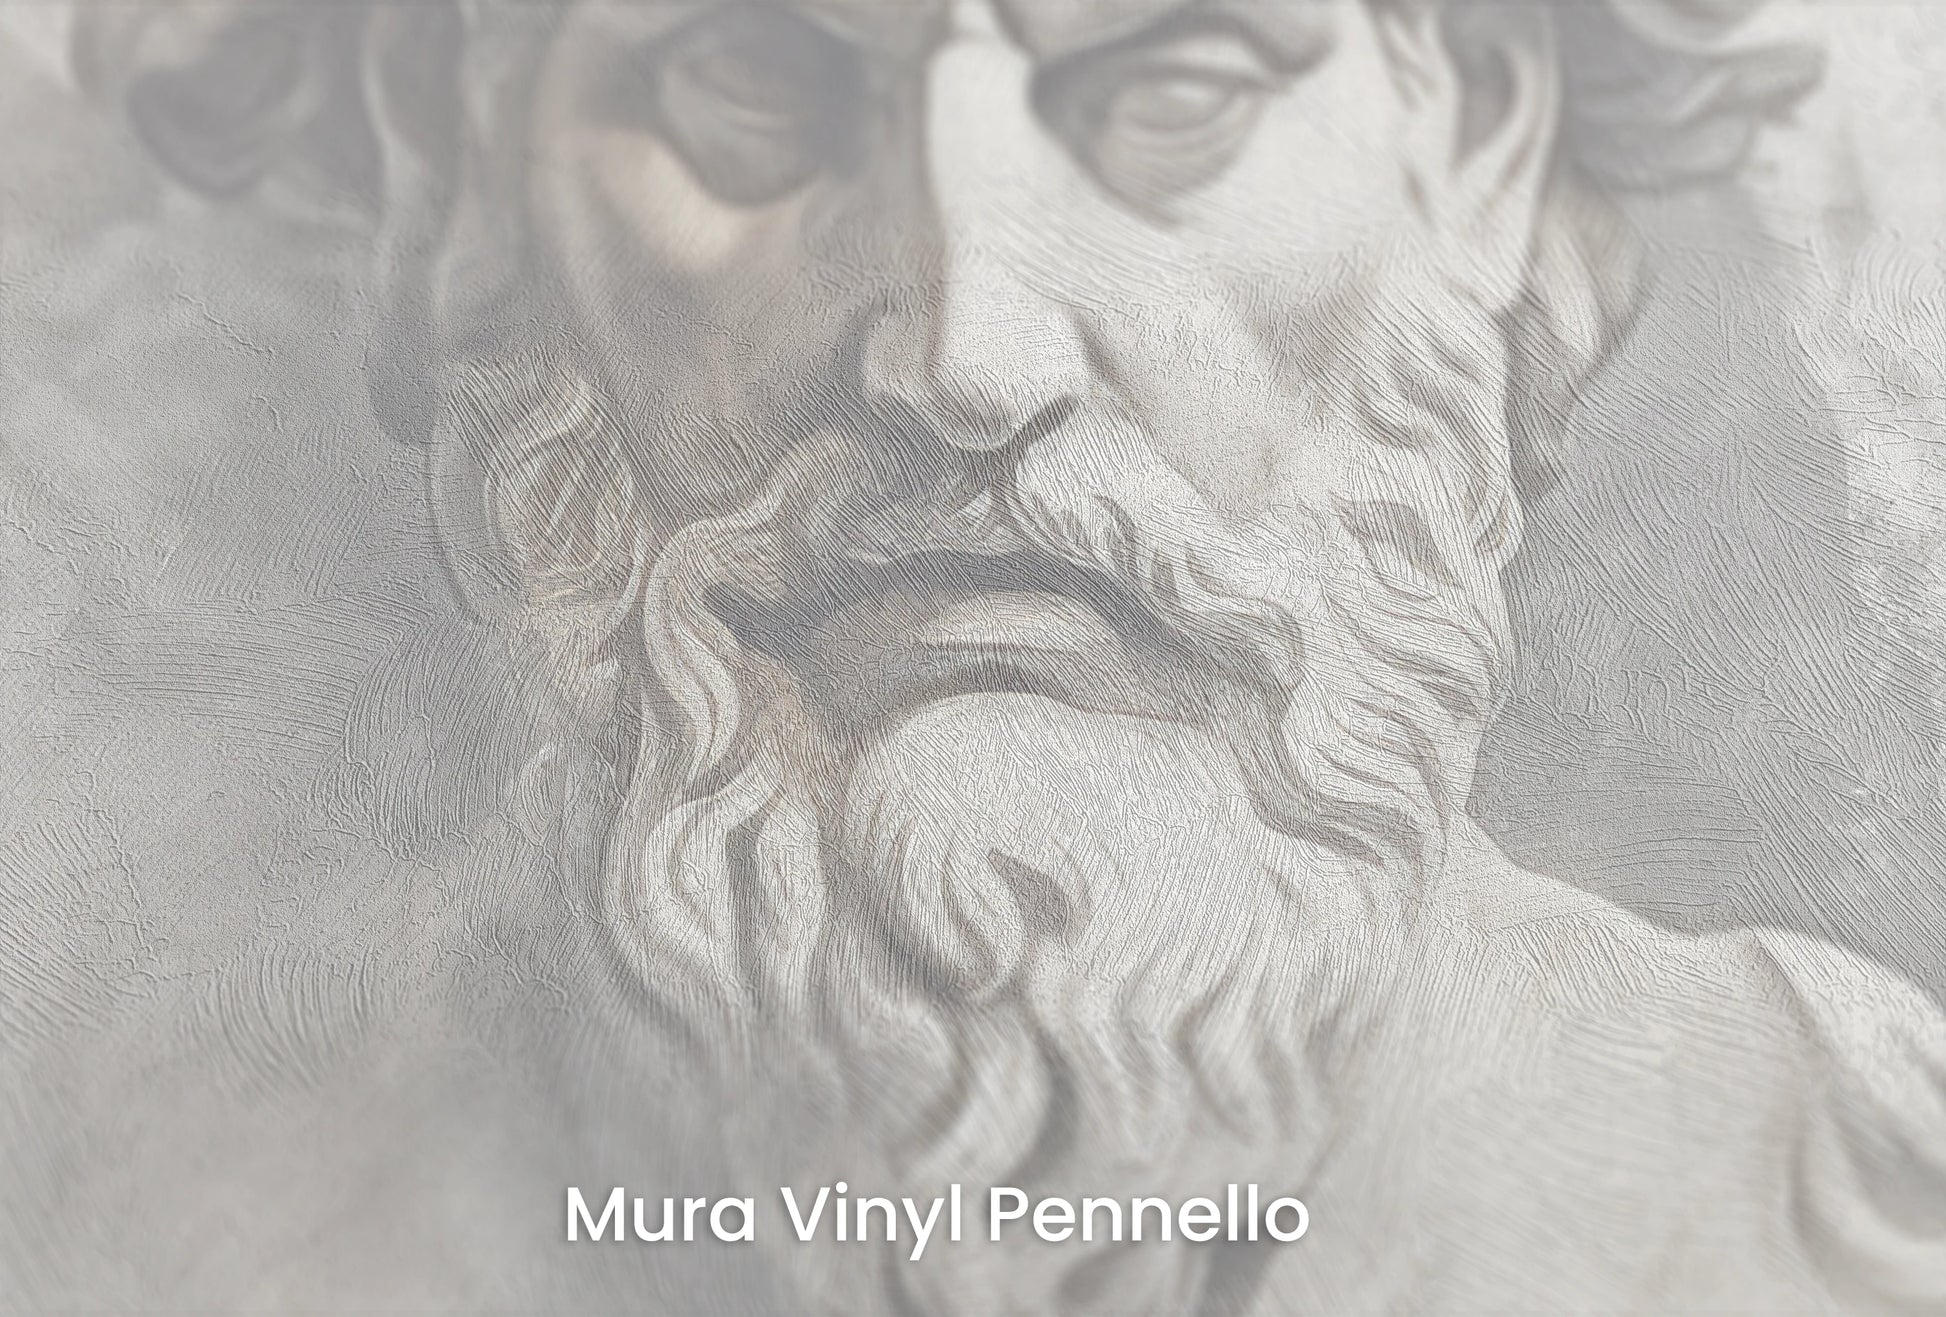 Zbliżenie na artystyczną fototapetę o nazwie Zeus's Majesty na podłożu Mura Vinyl Pennello - faktura pociągnięć pędzla malarskiego.